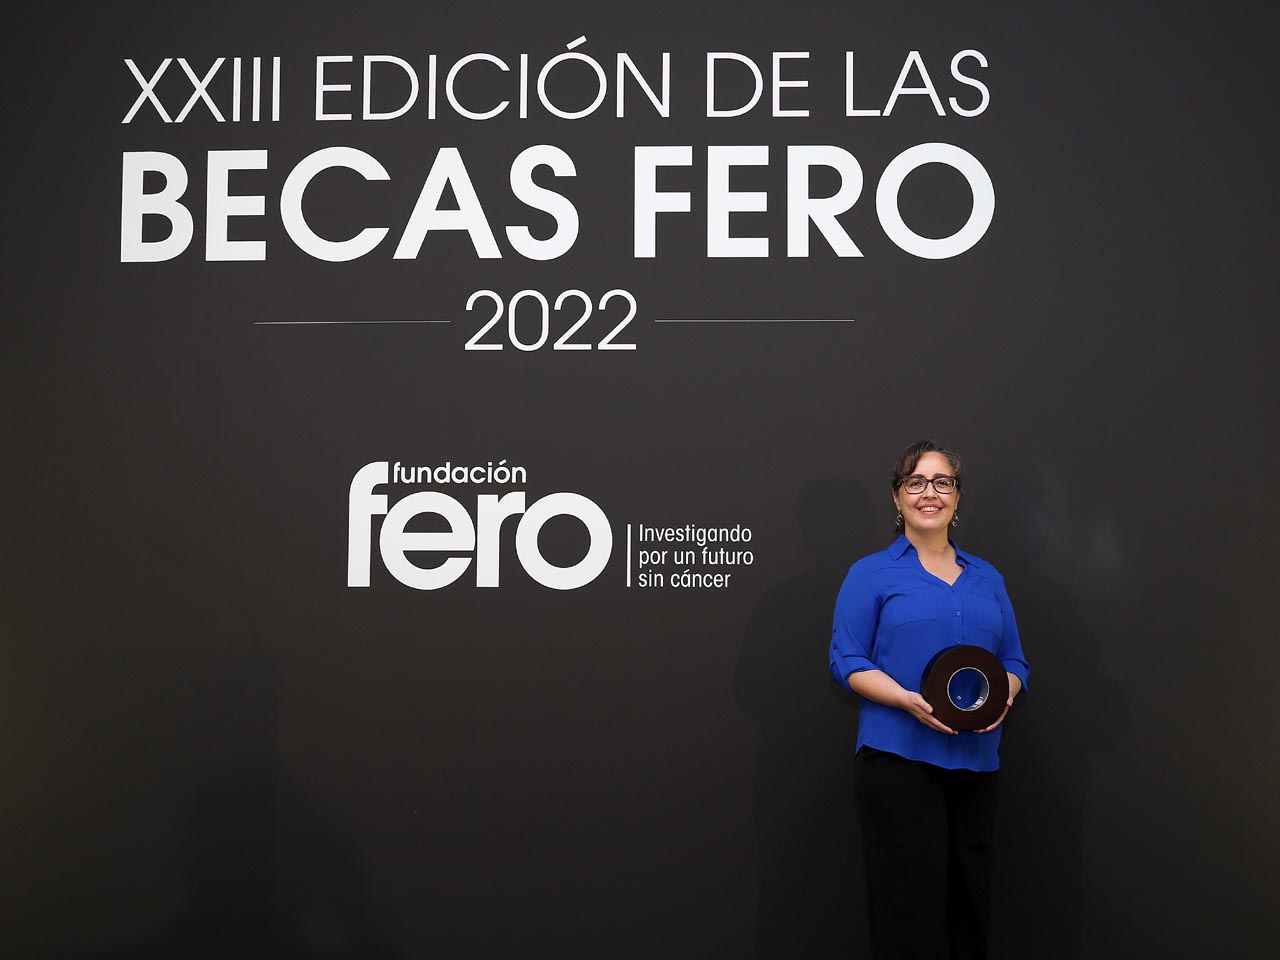 La doctora Alicia González-Martín, investigadora del Departamento de Bioquímica de la Universidad Autónoma de Madrid (UAM) y del Instituto de Investigaciones Biomédicas Alberto Sols (IIB-CSIC/UAM), ha sido ganadora de la Beca FERO, en su XXIII edición. / Fundación FERO 